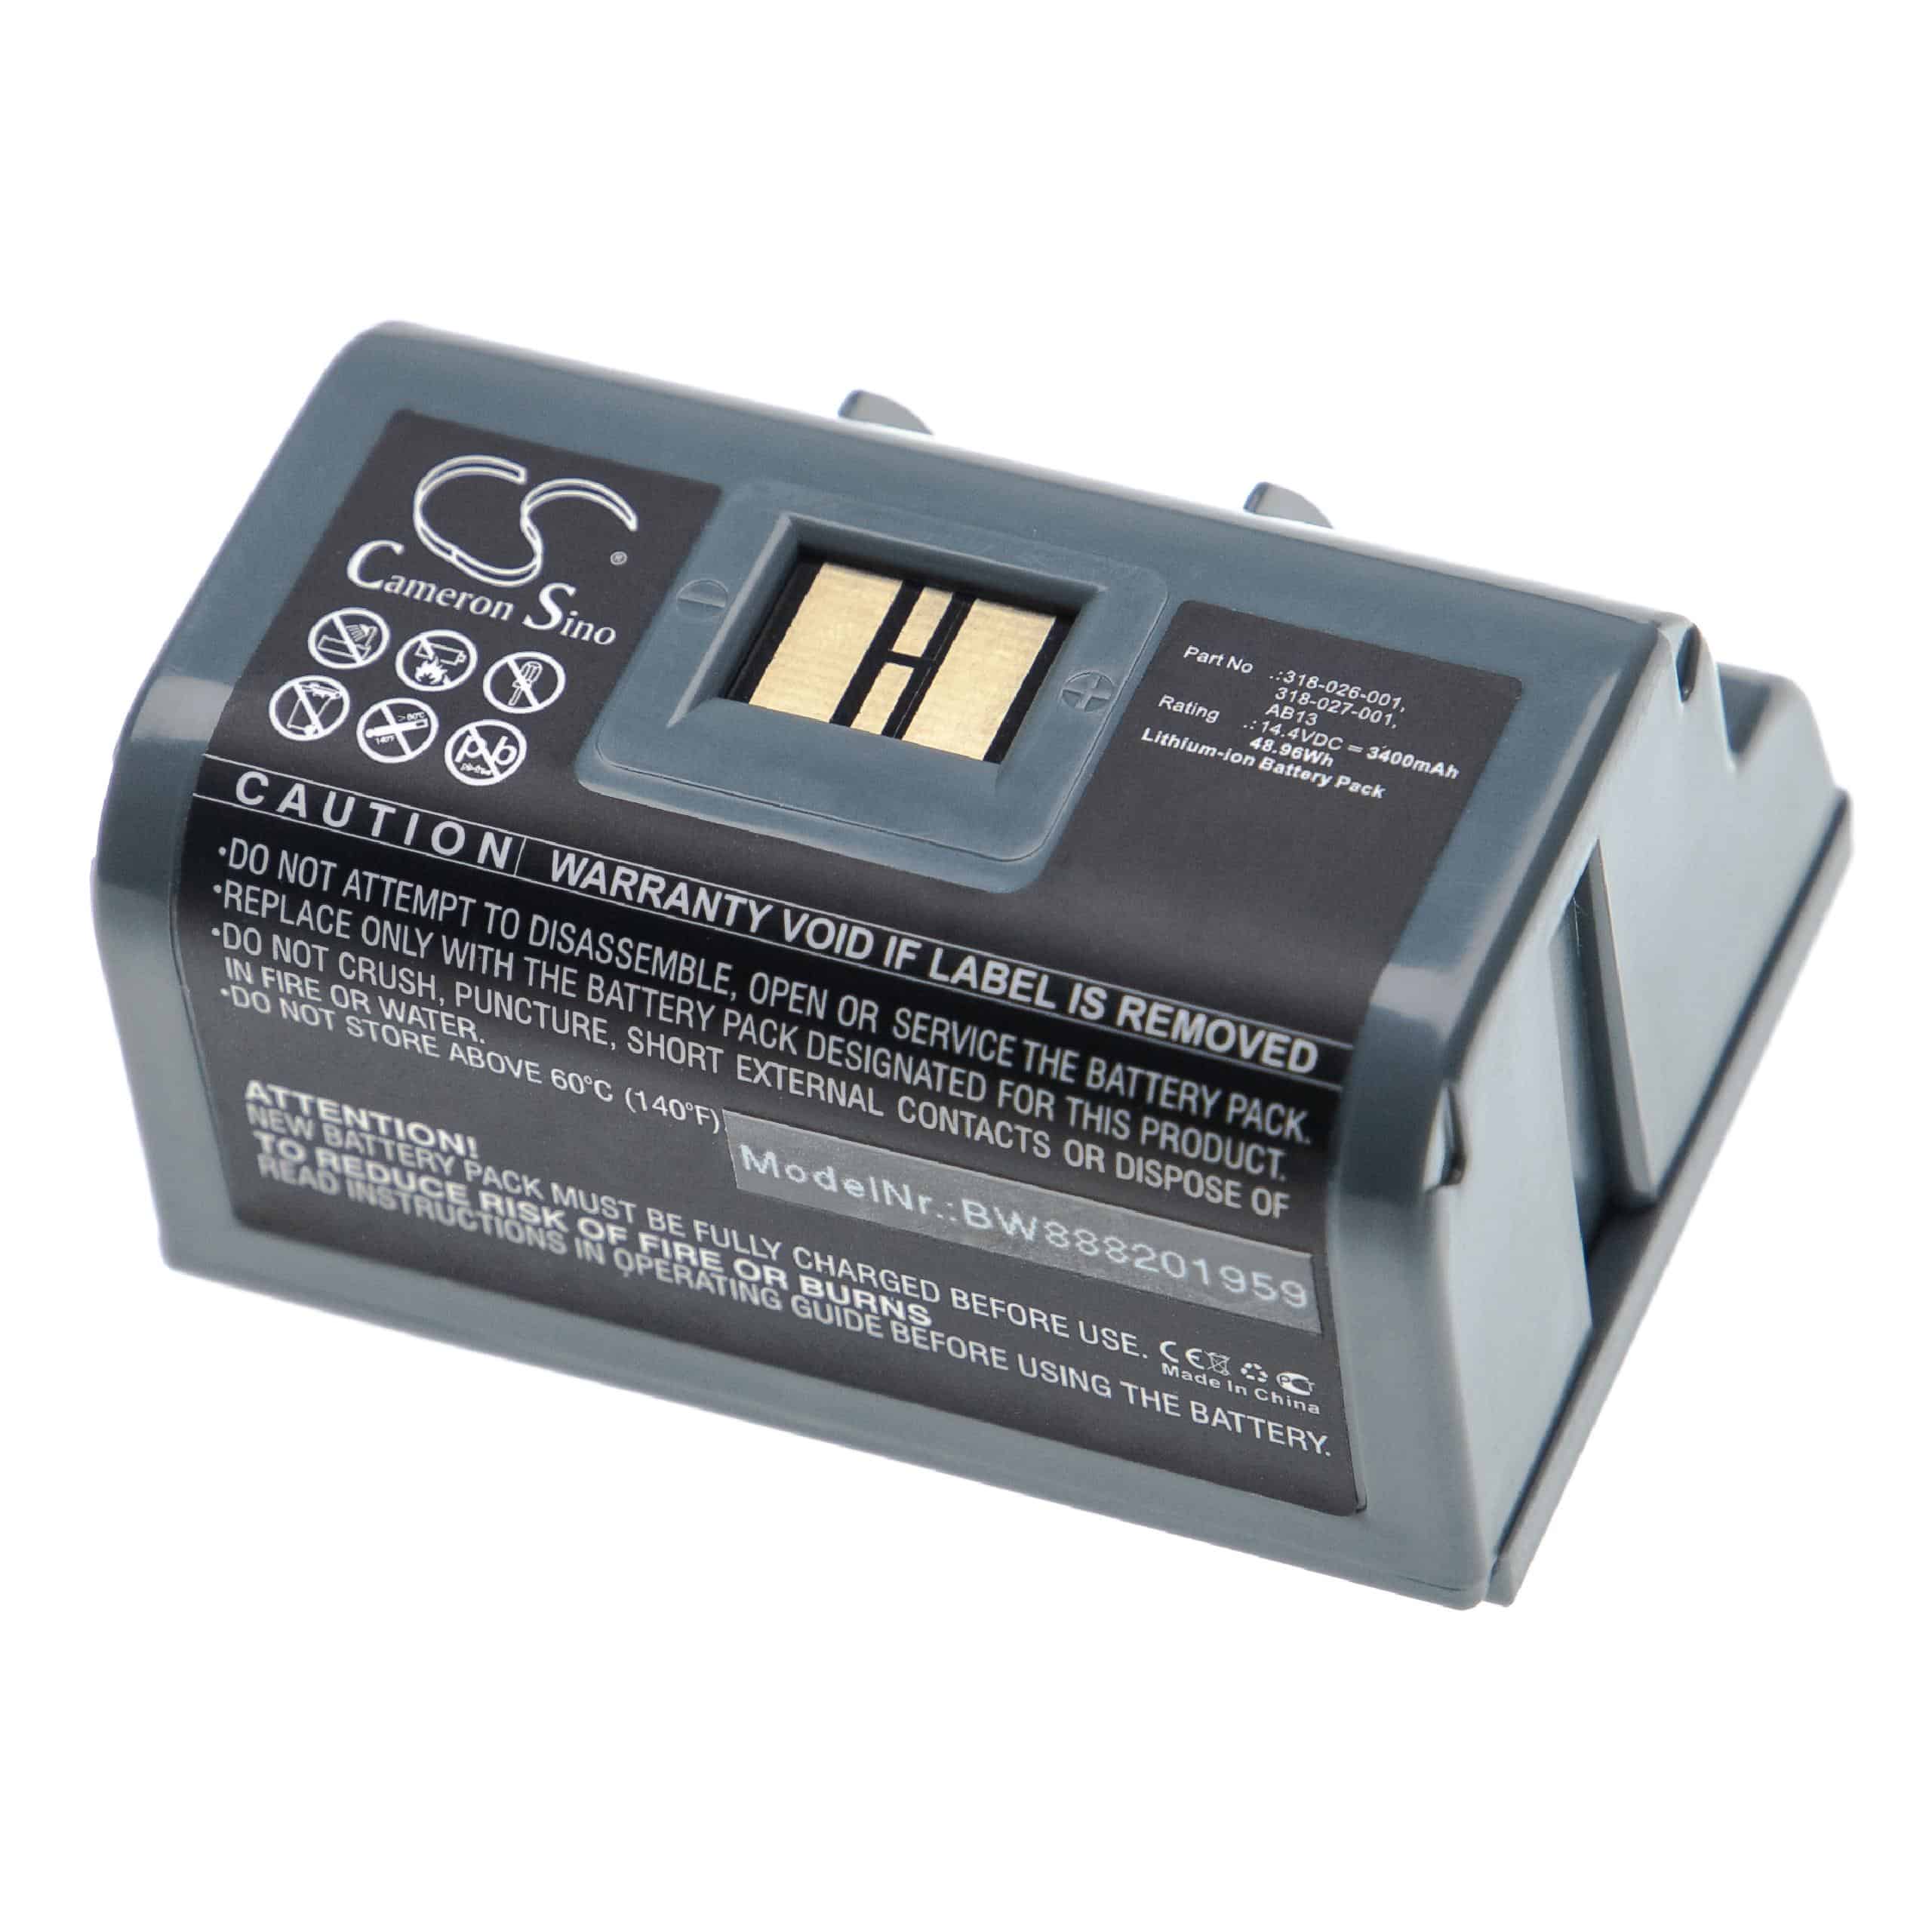 Batería reemplaza Intermec 318-026-001, 318-026-003 para impresora Honeywell - 3400 mAh 14,4 V Li-Ion